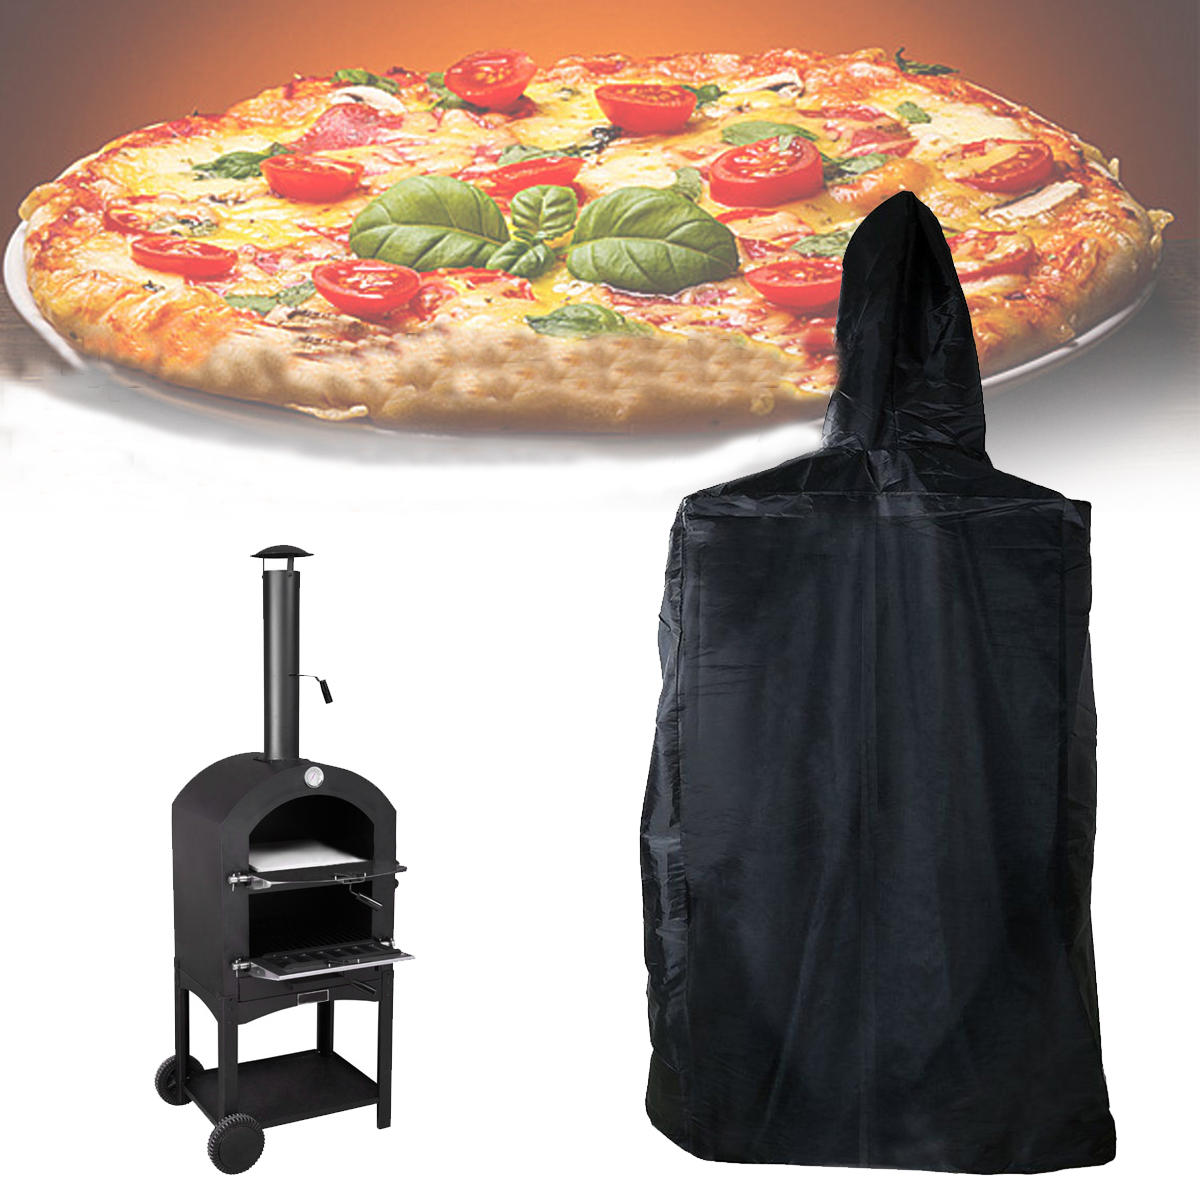 Русский: Крышка для уличной пиццы размером 160x37x50 см, защищающая от влаги, пыли и ультрафиолета.